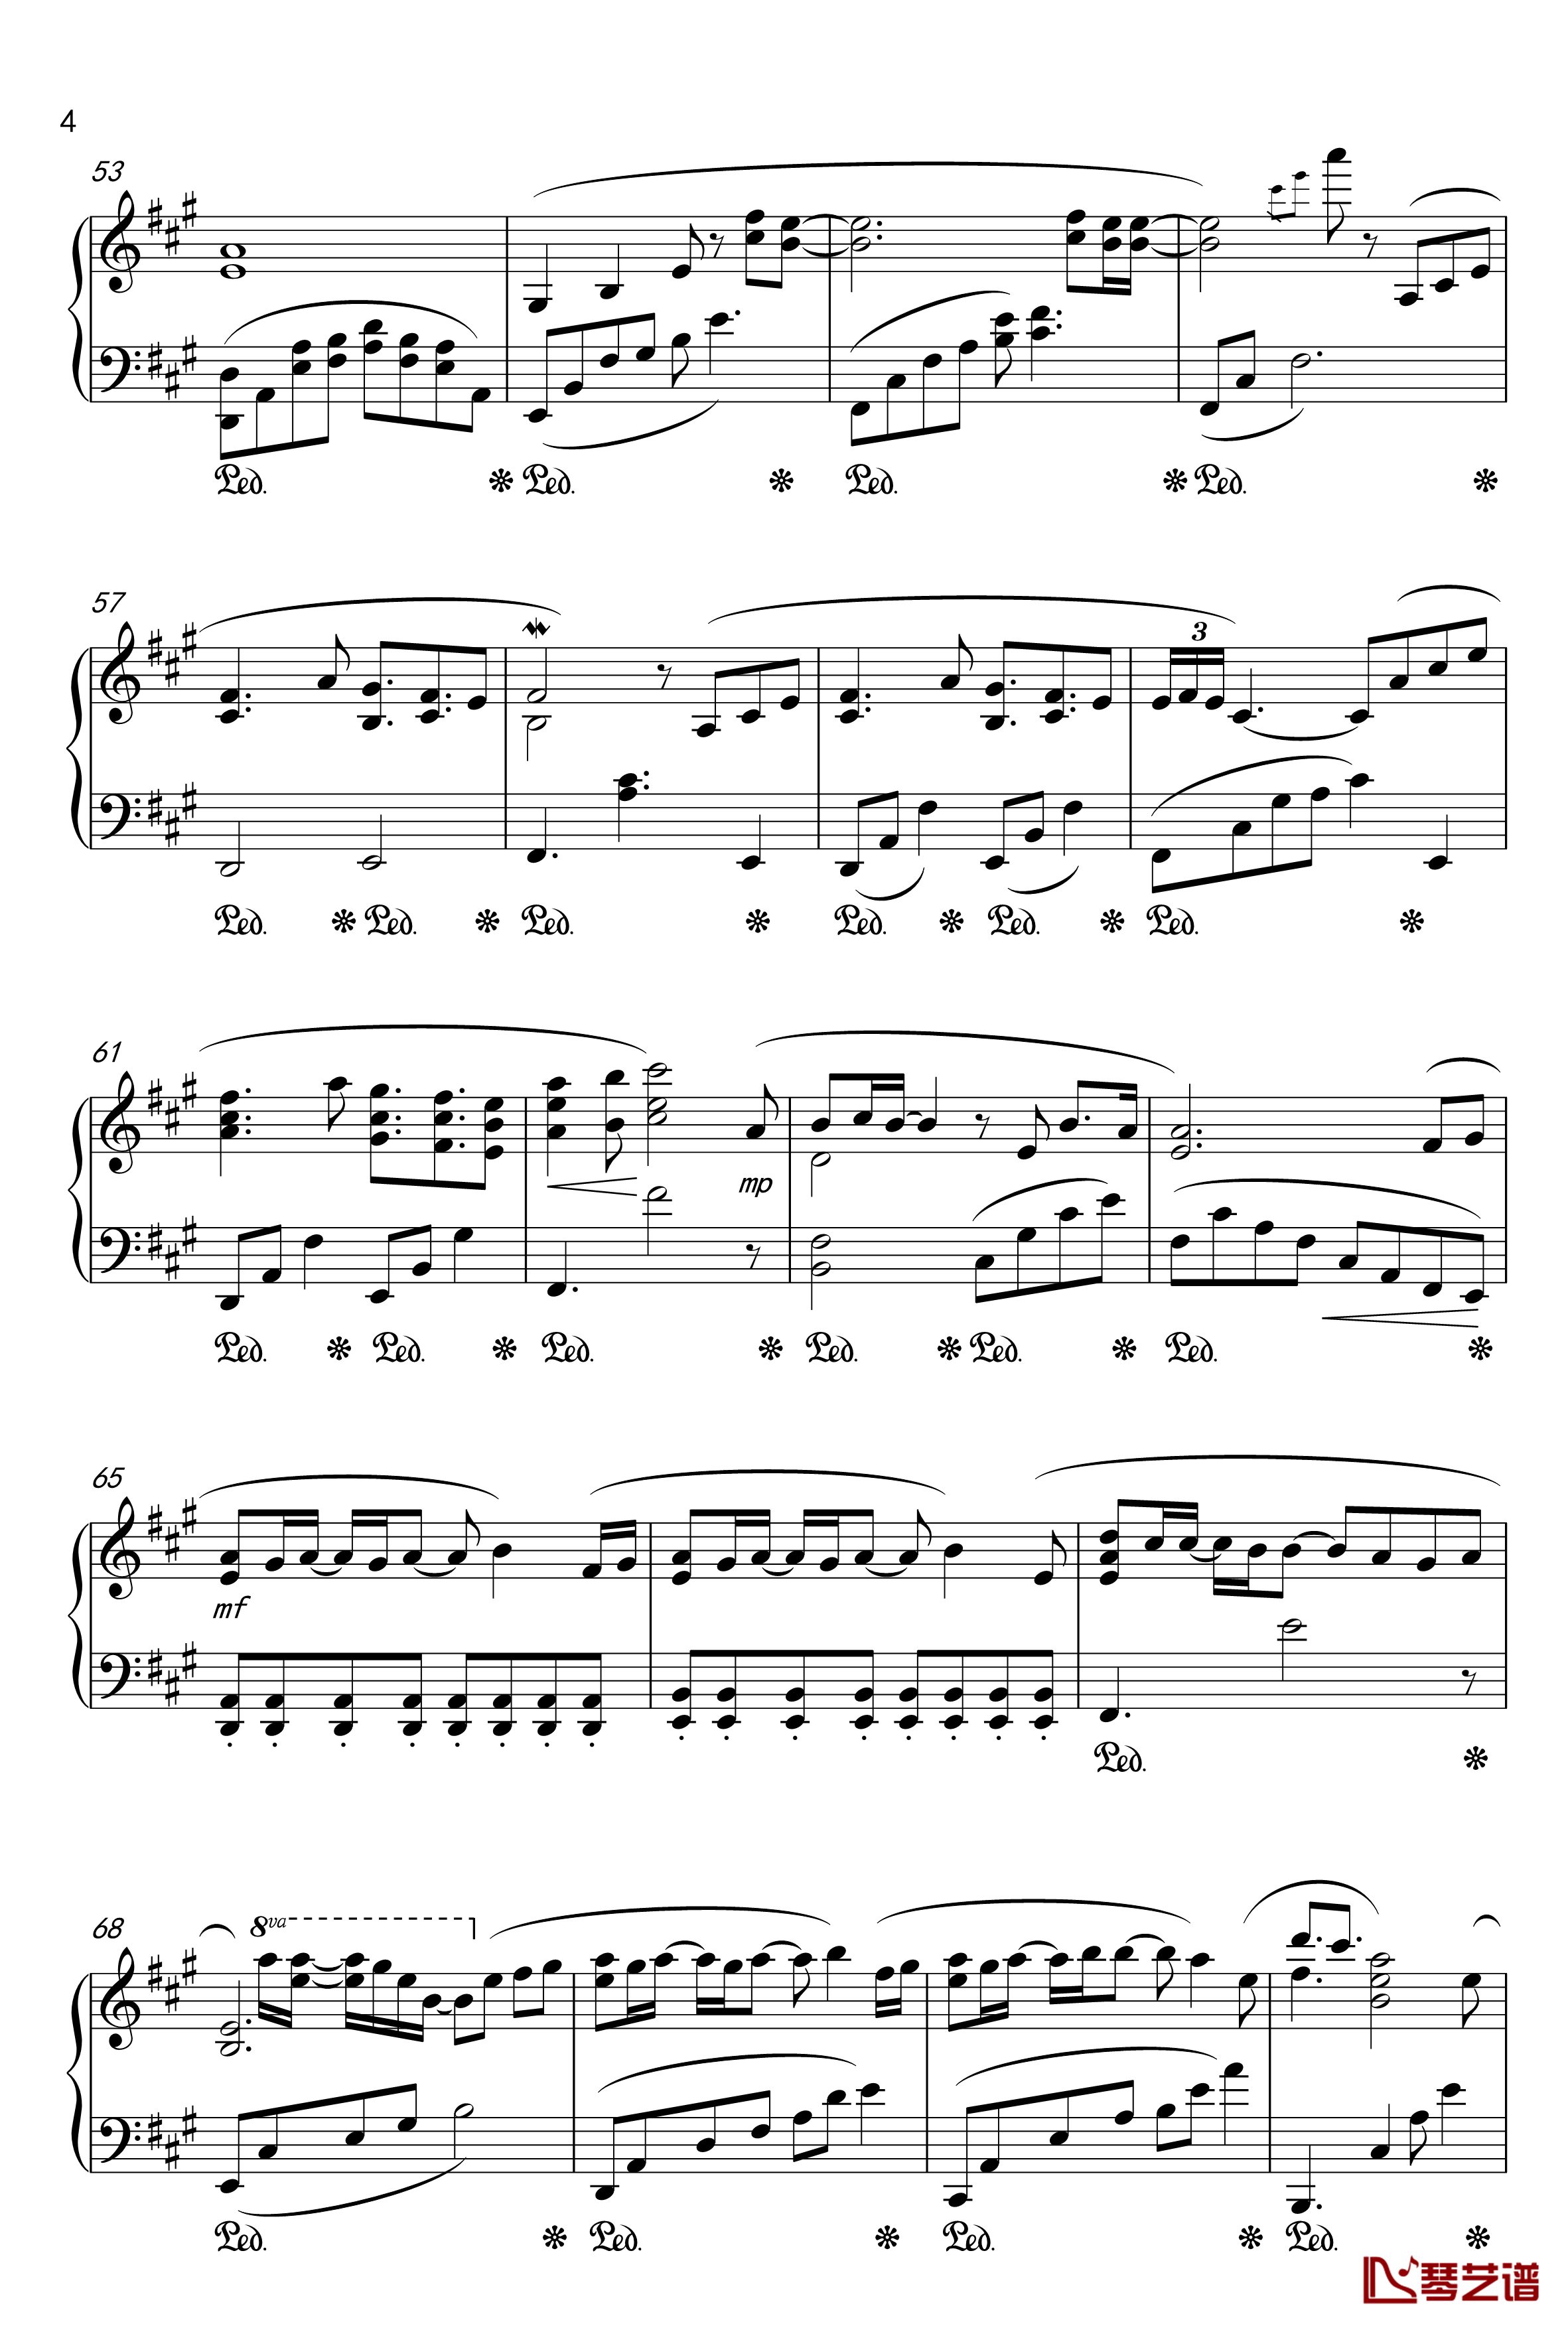 月夜に舞う恋の花-Piano Instrumental-钢琴谱-千の刃涛4